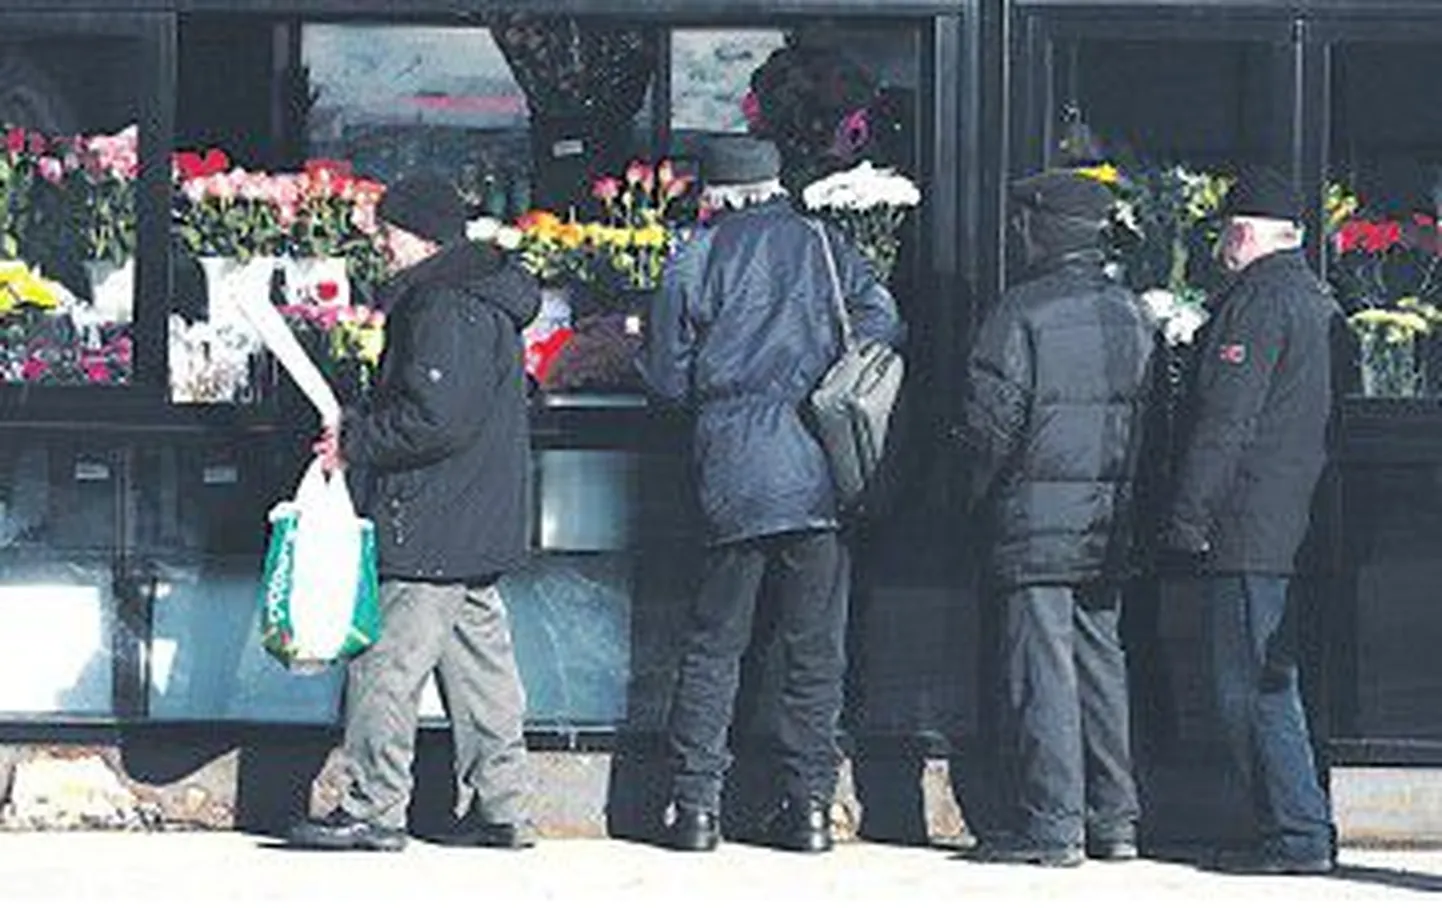 Независимо от того, организовывают фирмы празднование 8 марта или нет, мужчины дарят своим коллегам-женщинам цветы.